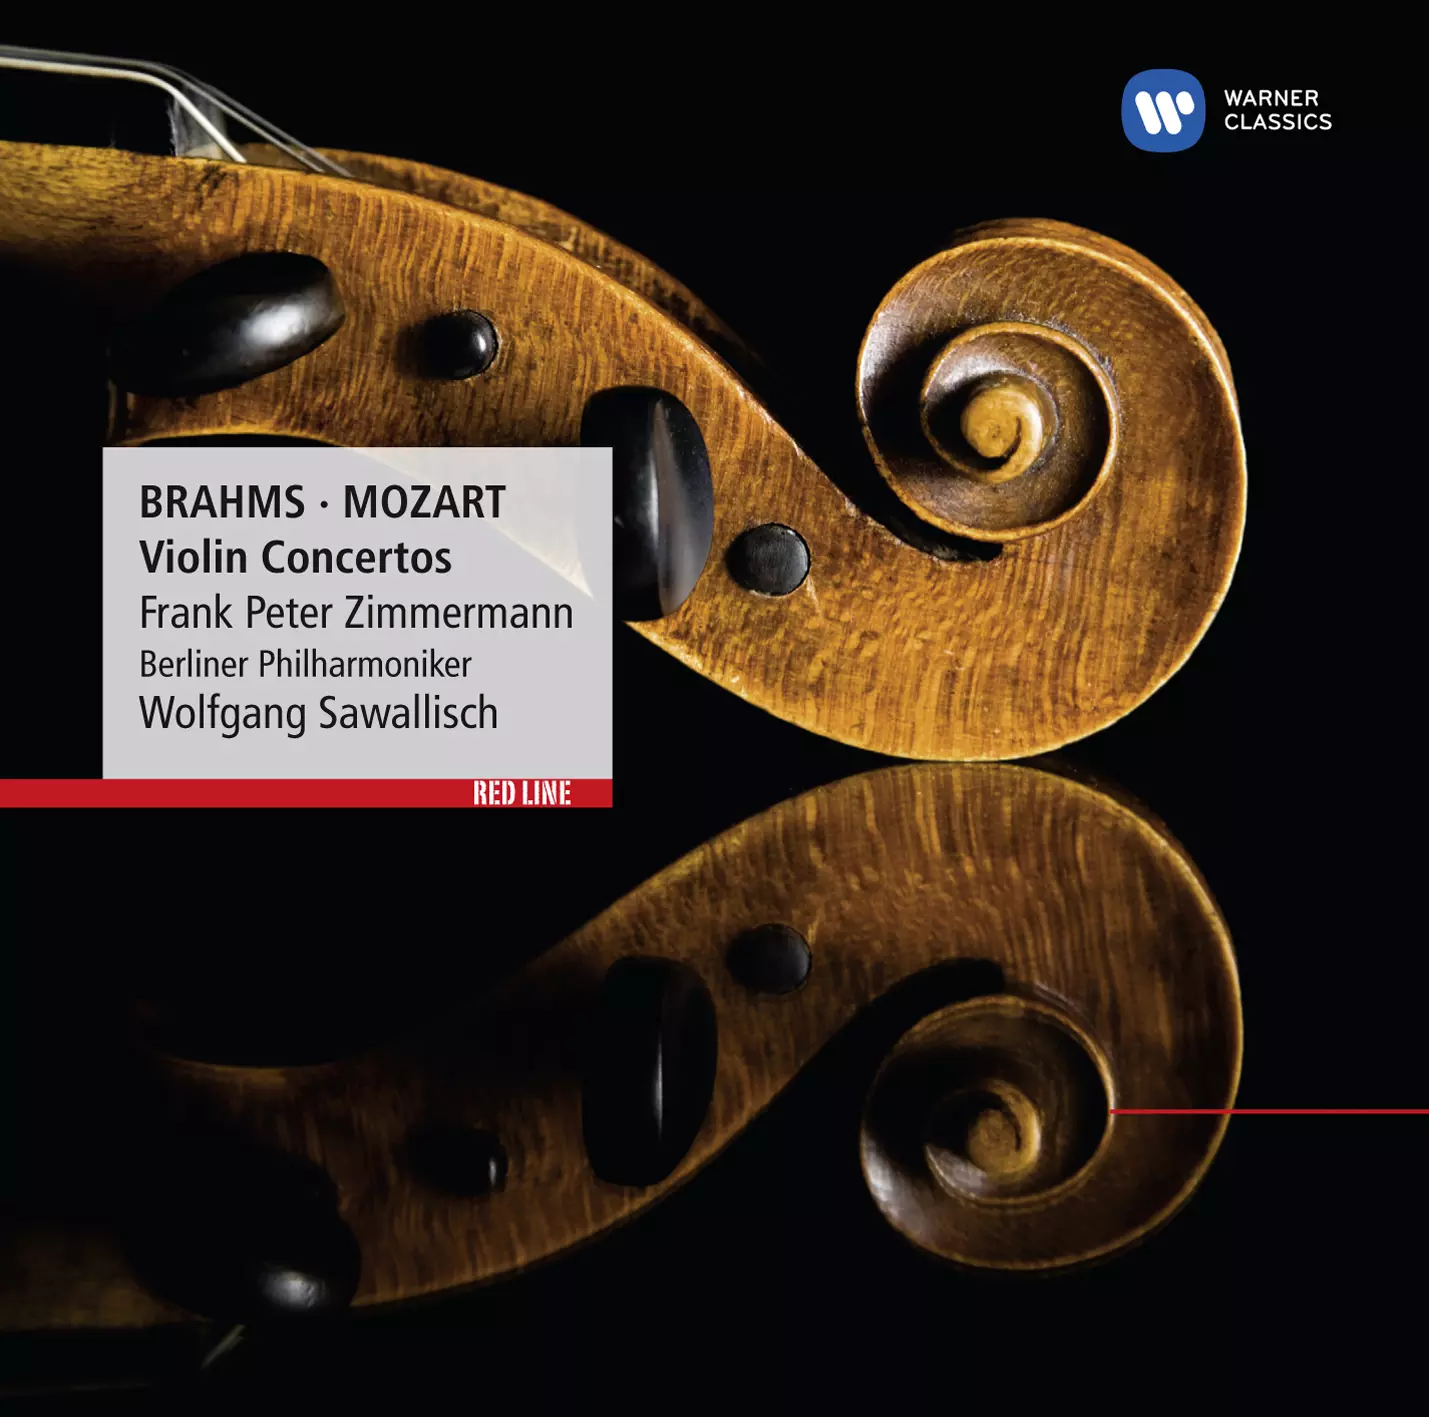 Brahms, Mozart: Violin Concertos